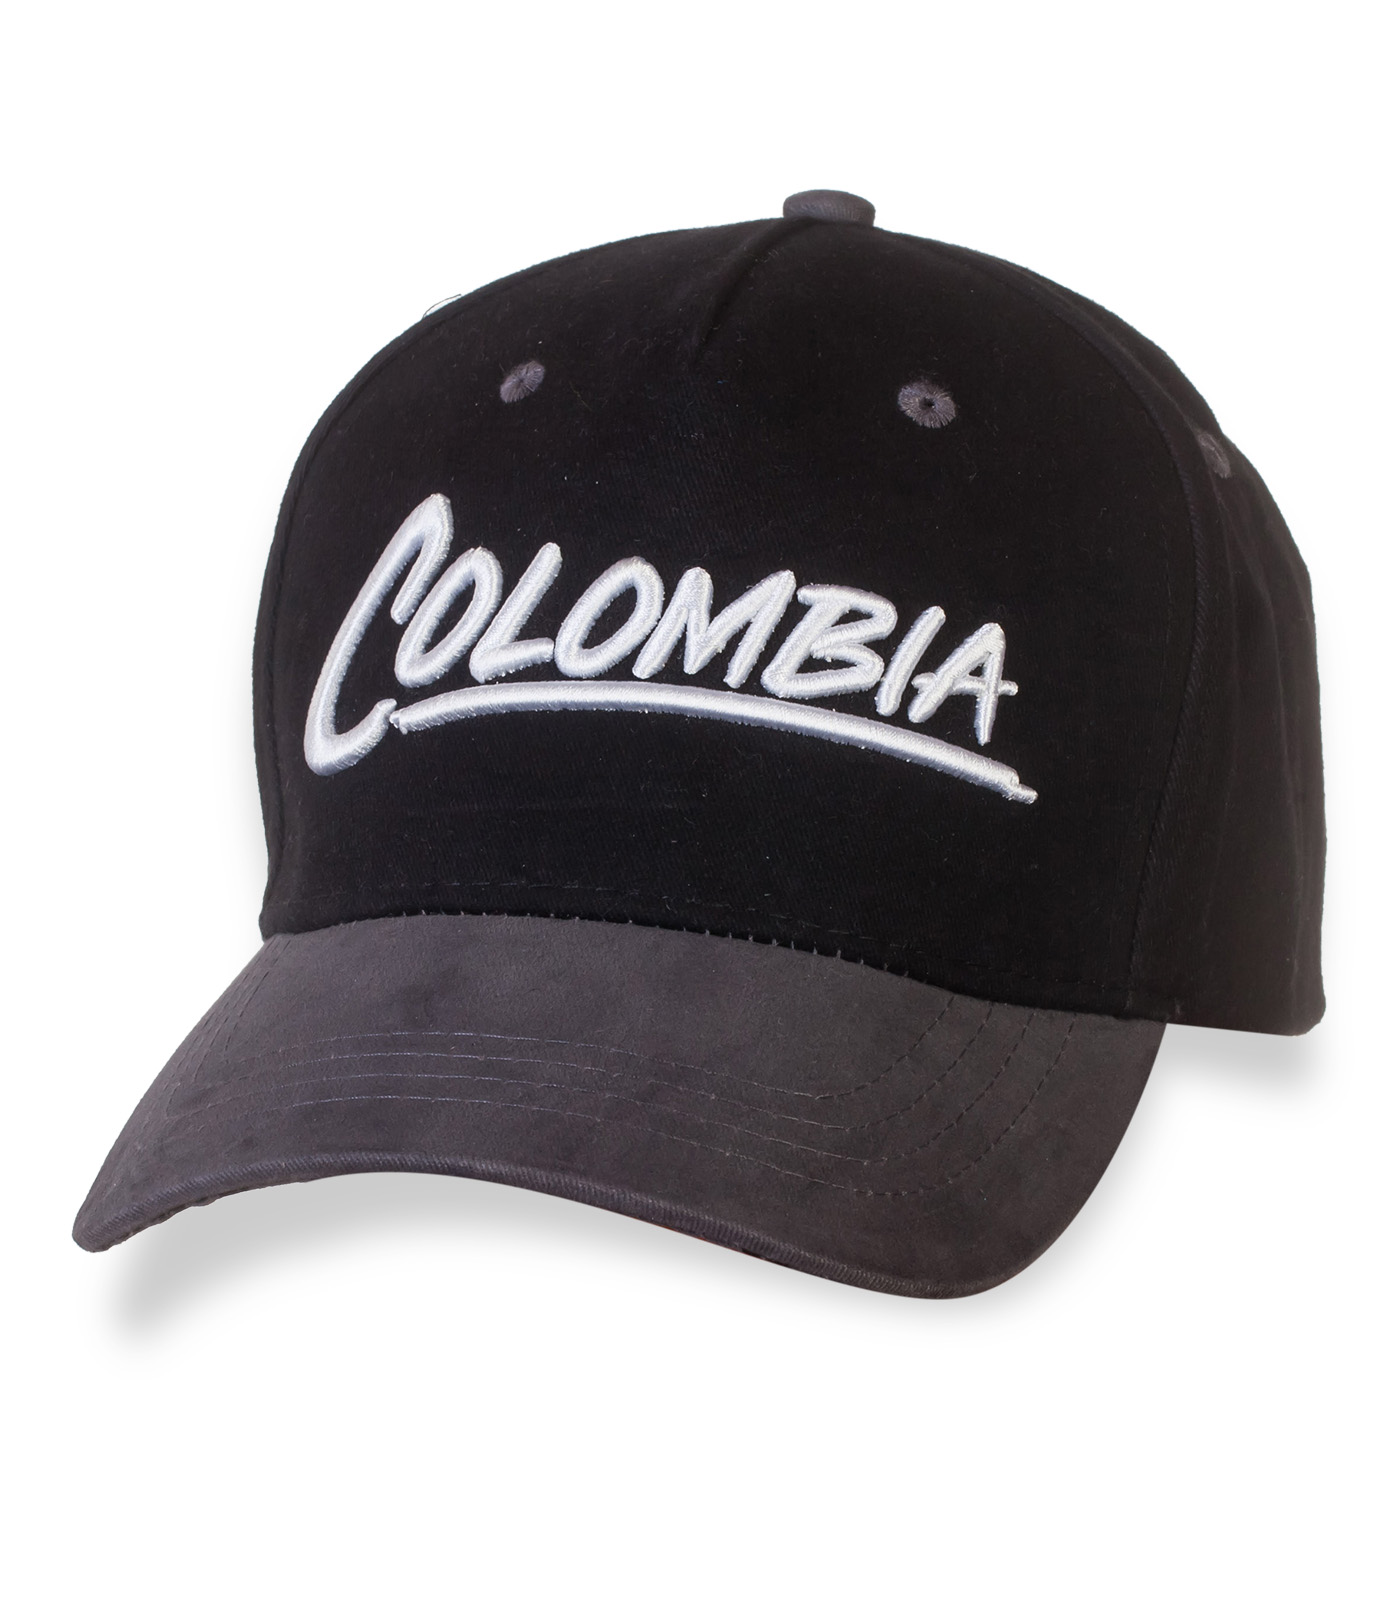 Мужская классическая бейсболка Colombia. ХИТ! Символ твоего стиля и внутренней свободы №20154